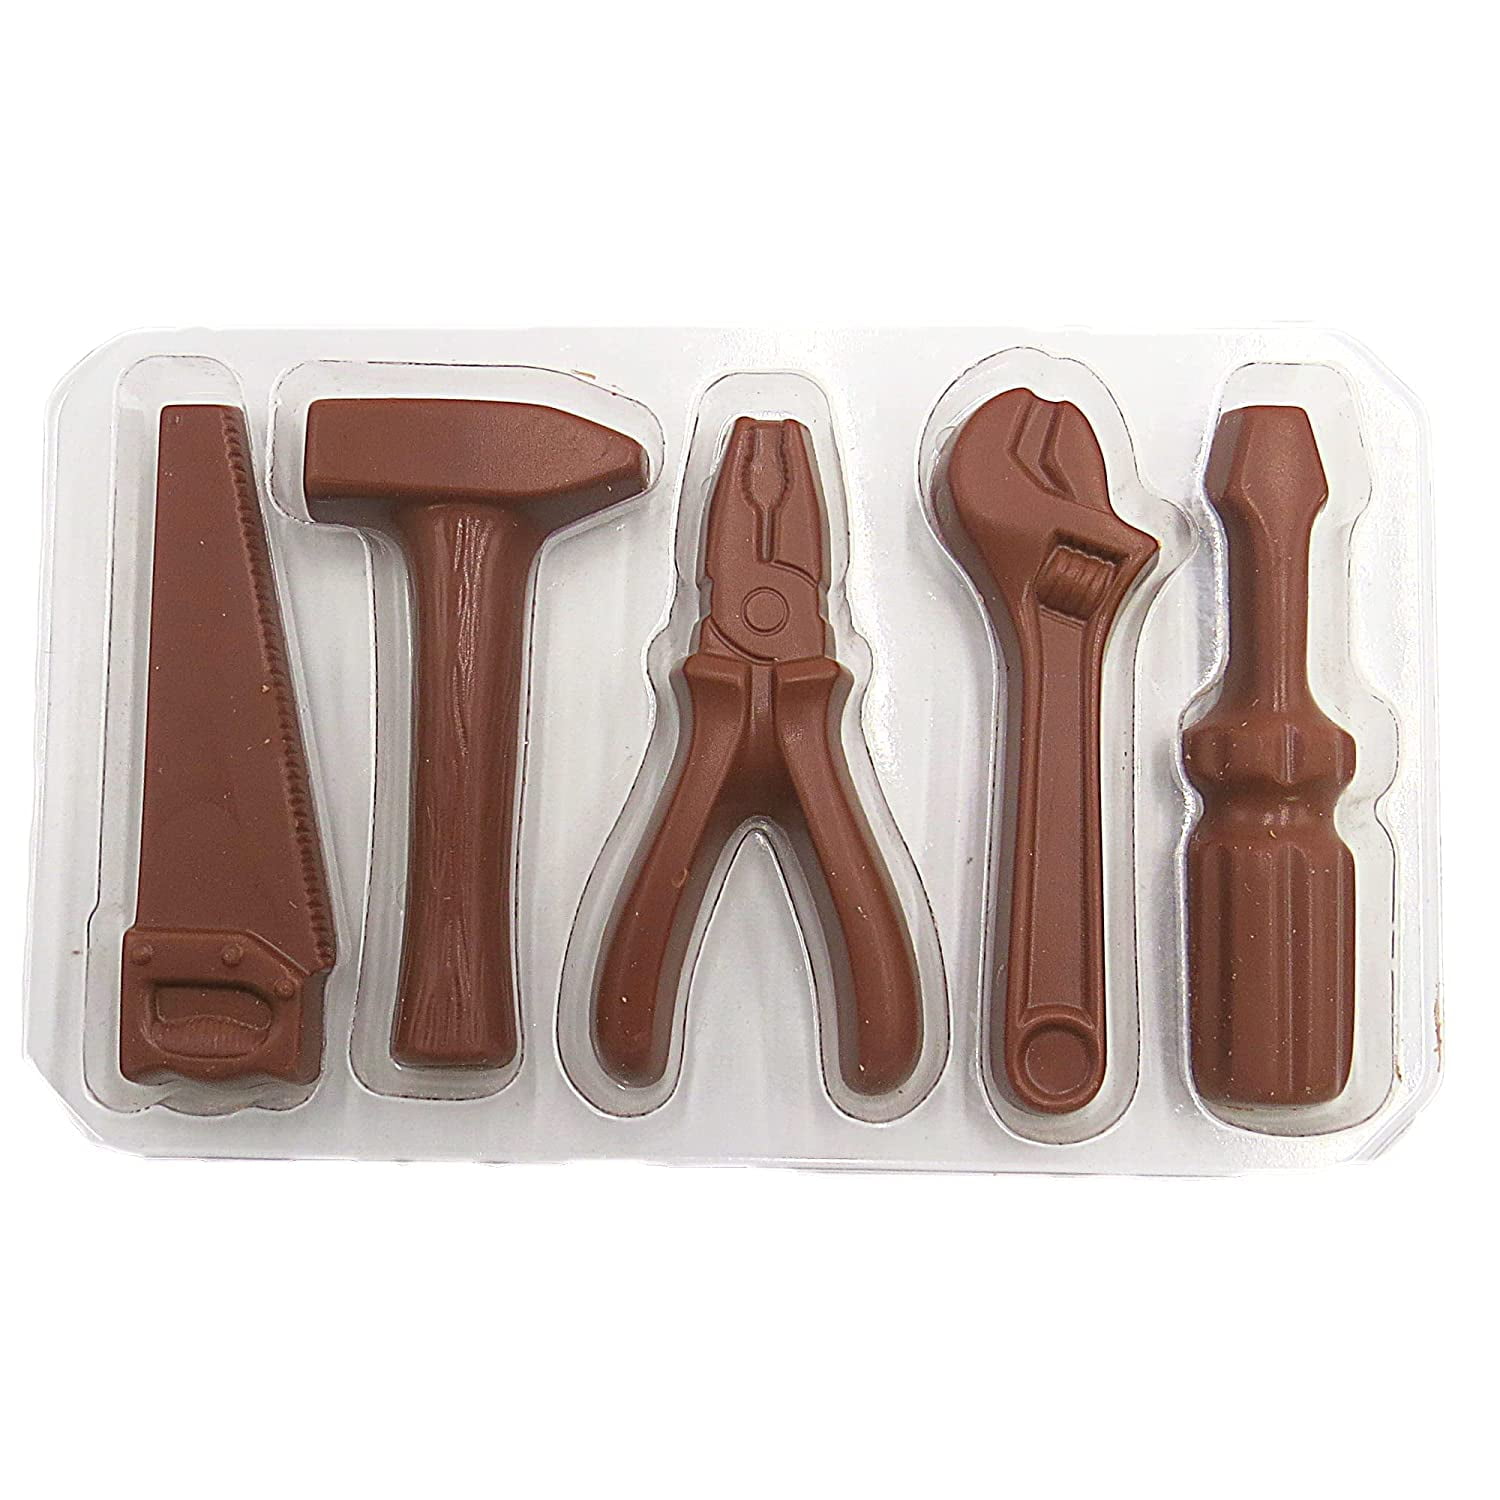 Providorium  Weibler Chocolate Tool set